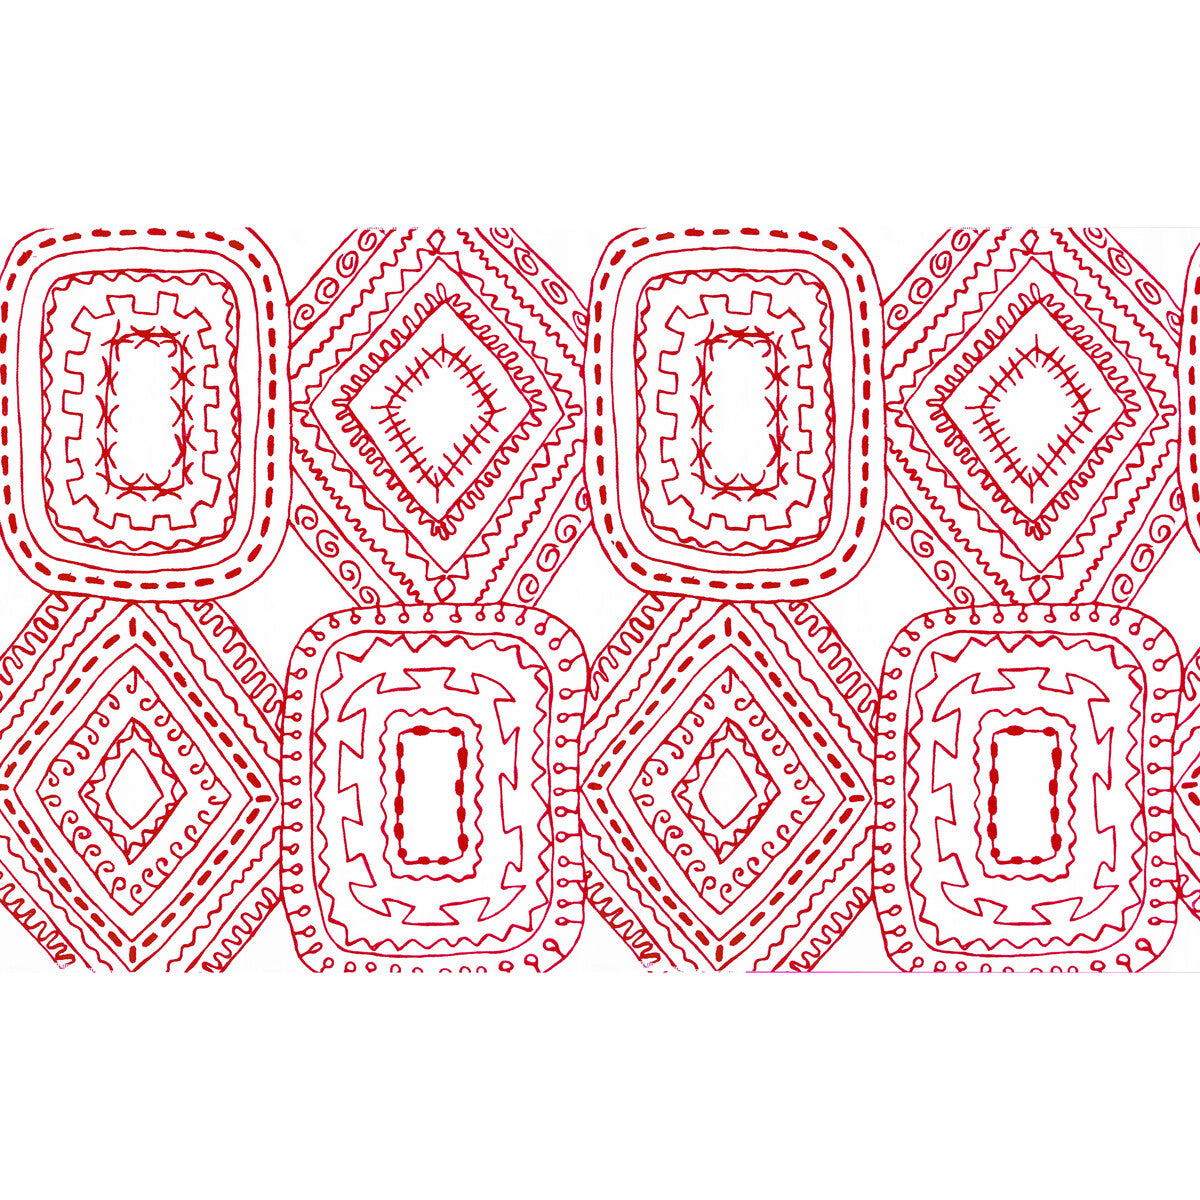 Santo Domingo fabric in rojo color - pattern GDT5570.002.0 - by Gaston y Daniela in the Gaston Luis Bustamante collection